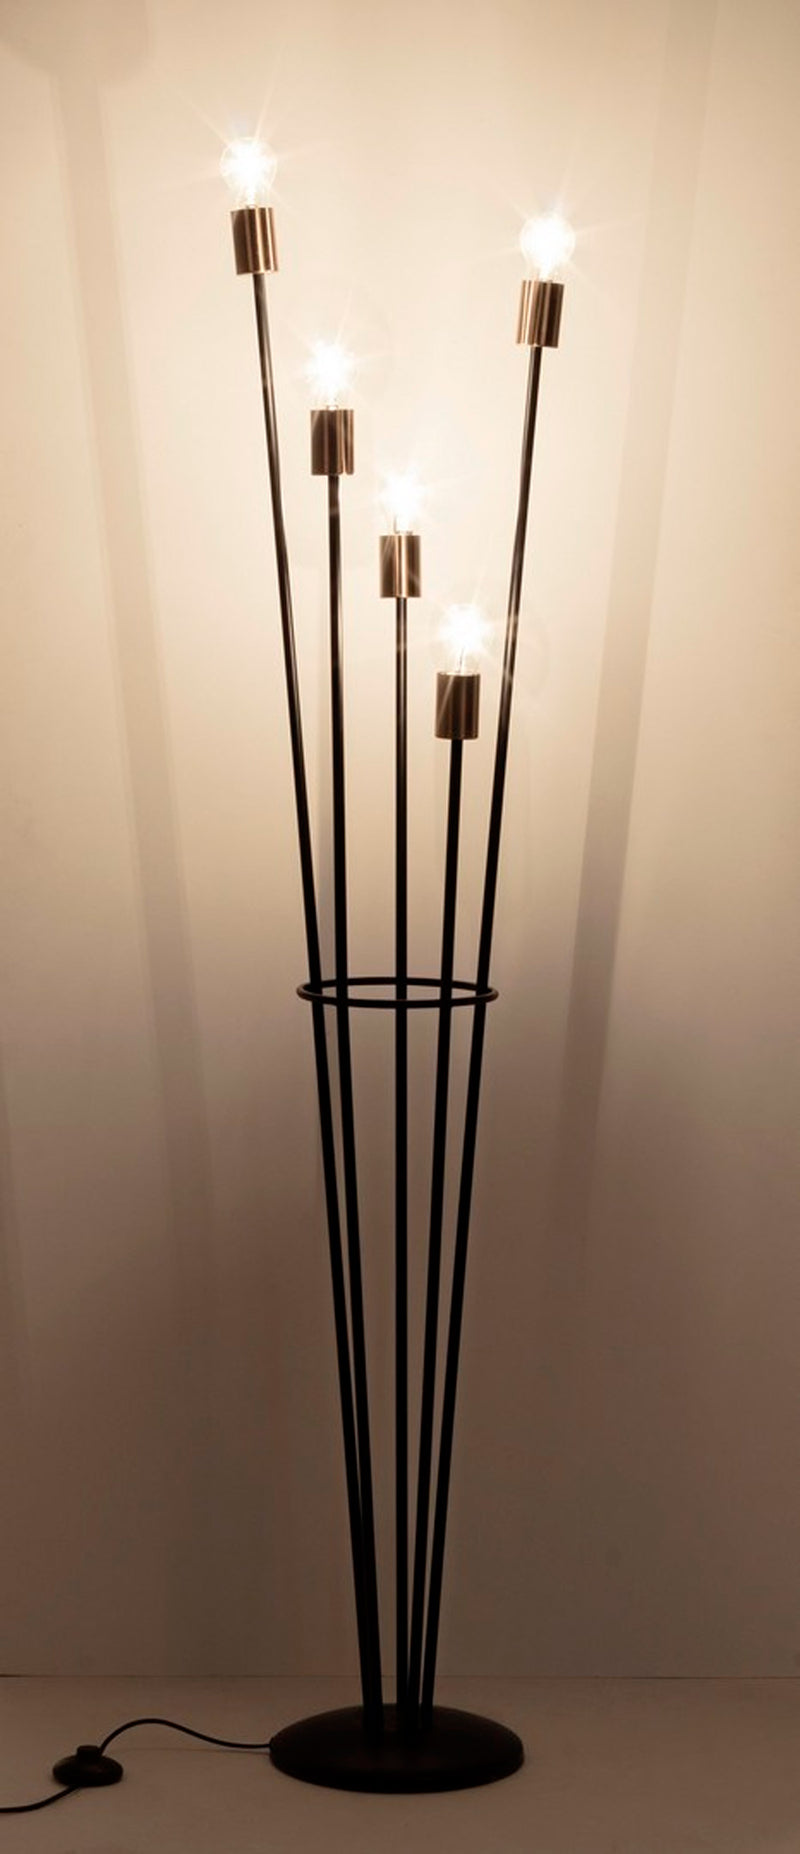 Lampada da pavimento da salotto moderna in metallo colore nero con 5 luci cm 34x30x155h